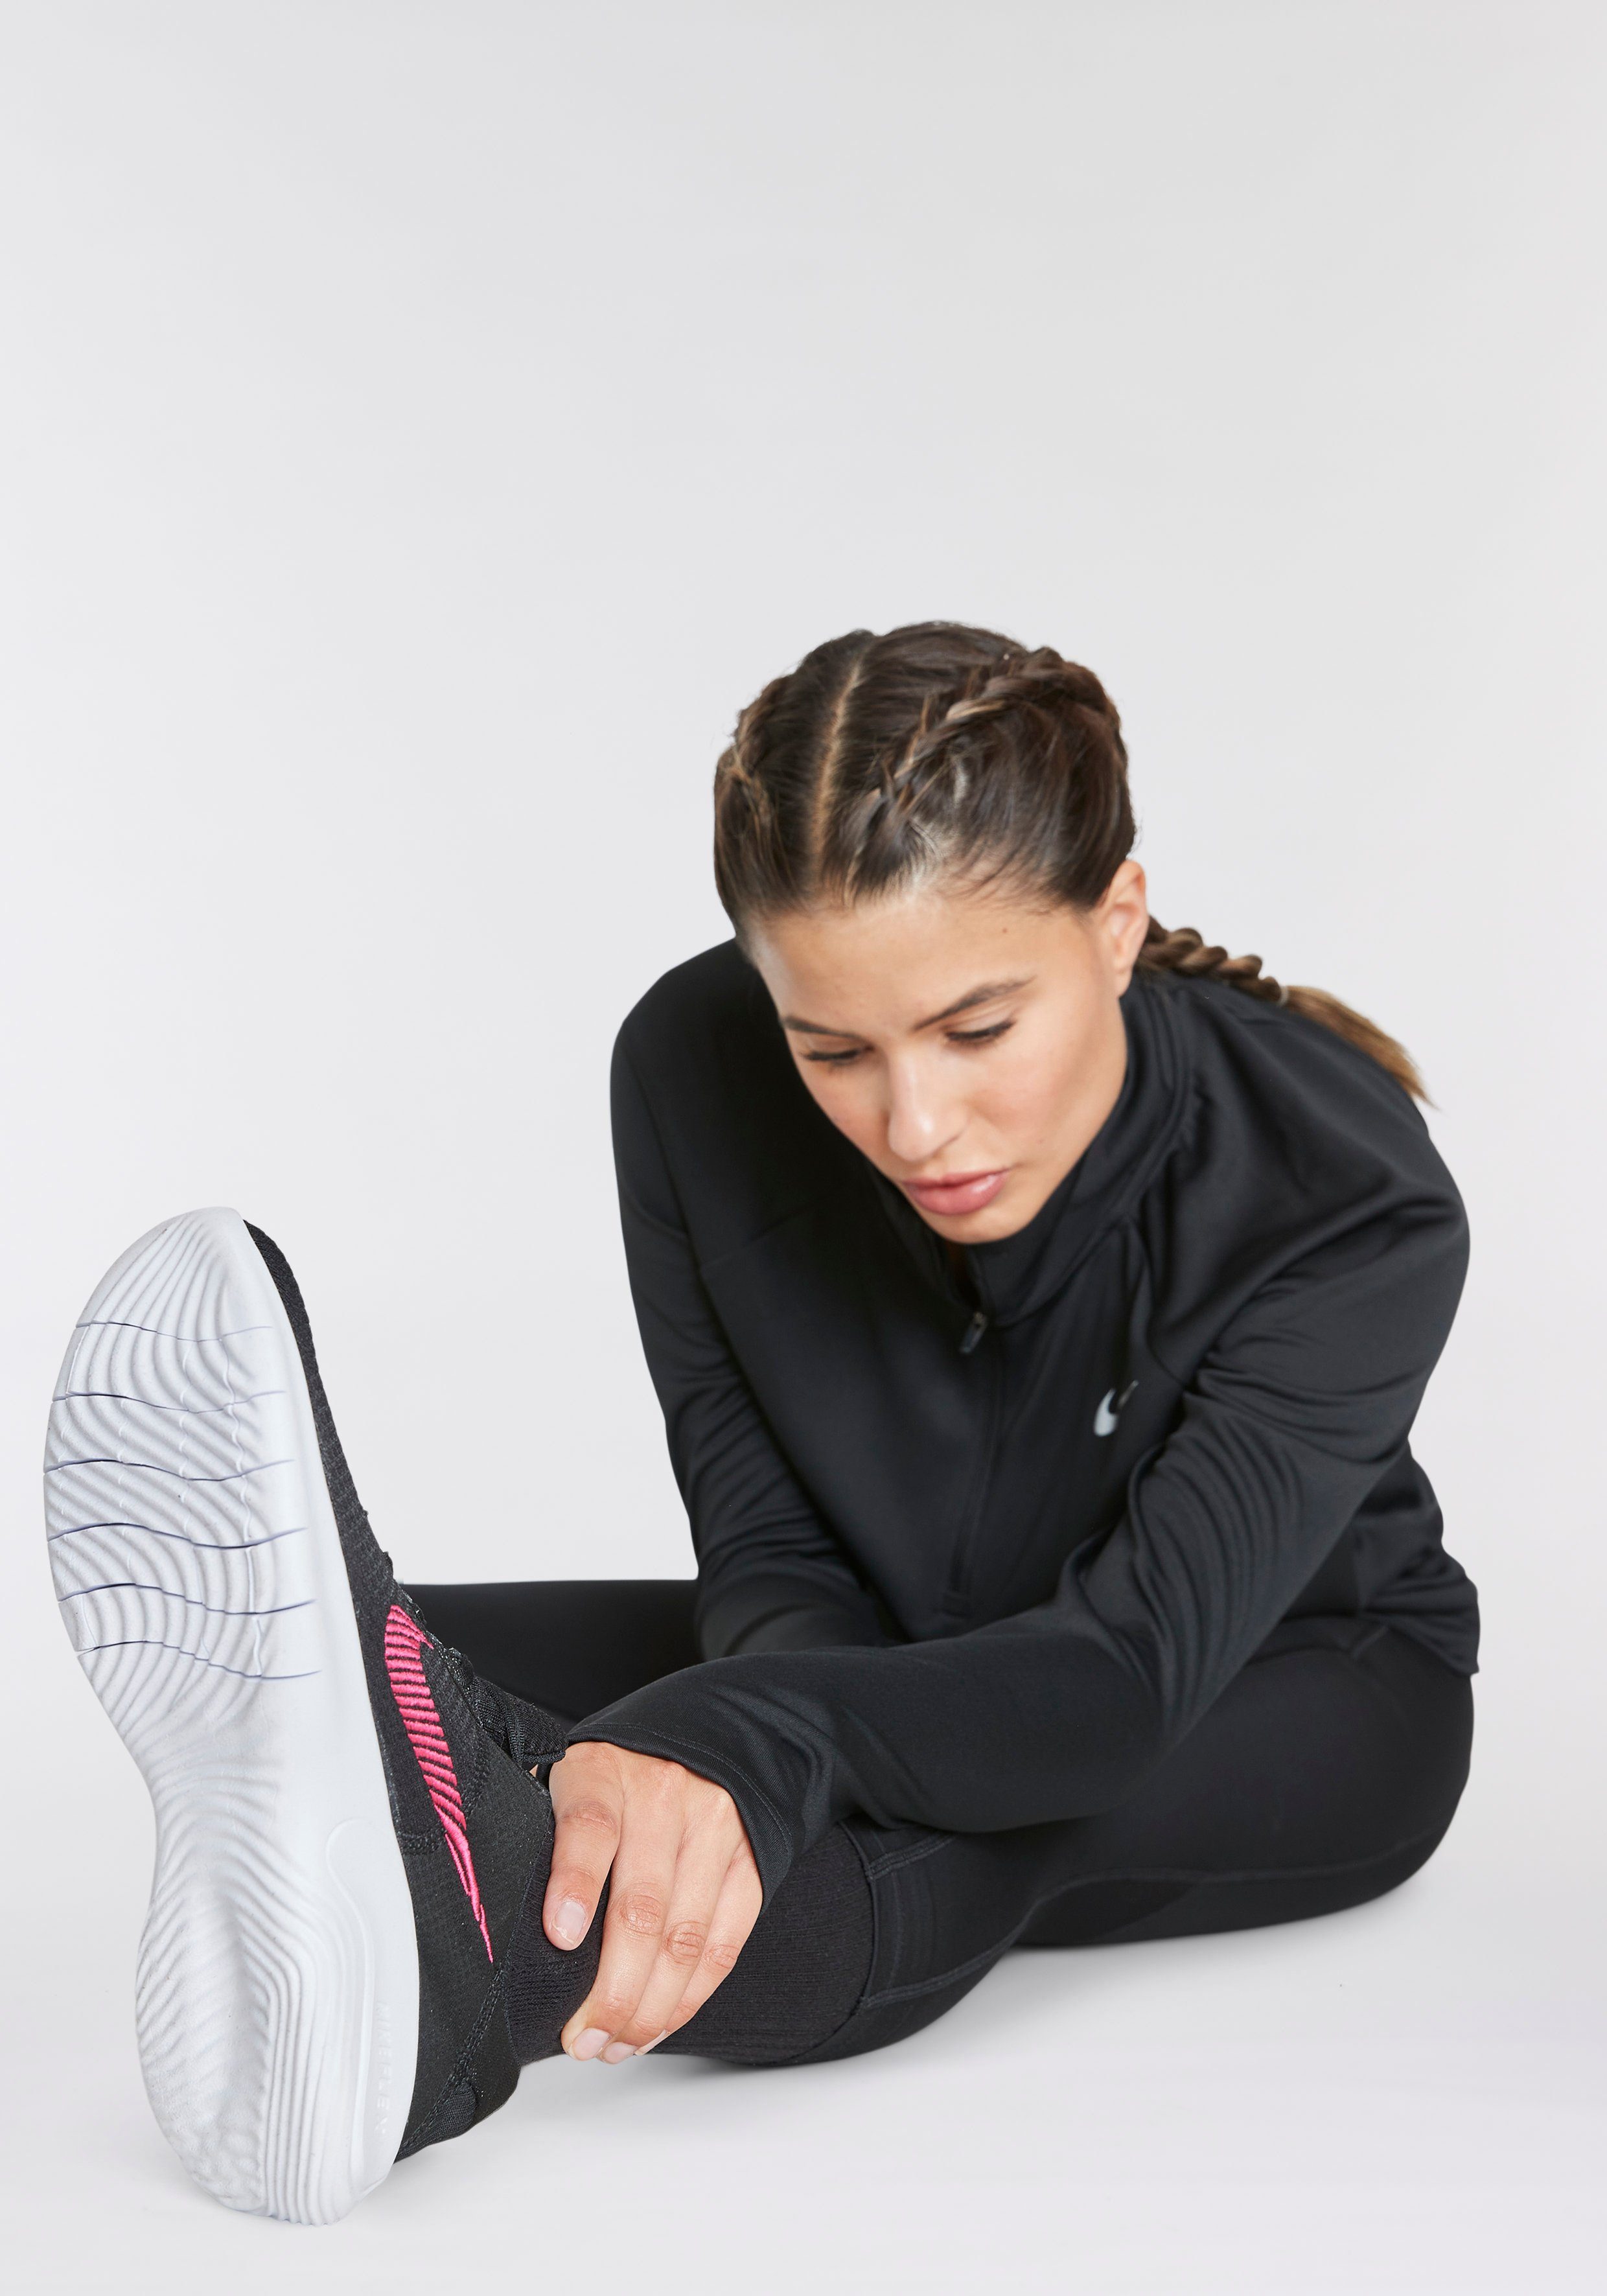 RUN NEXT FLEX Nike EXPERIENCE Laufschuh schwarz-pink NATURE 11